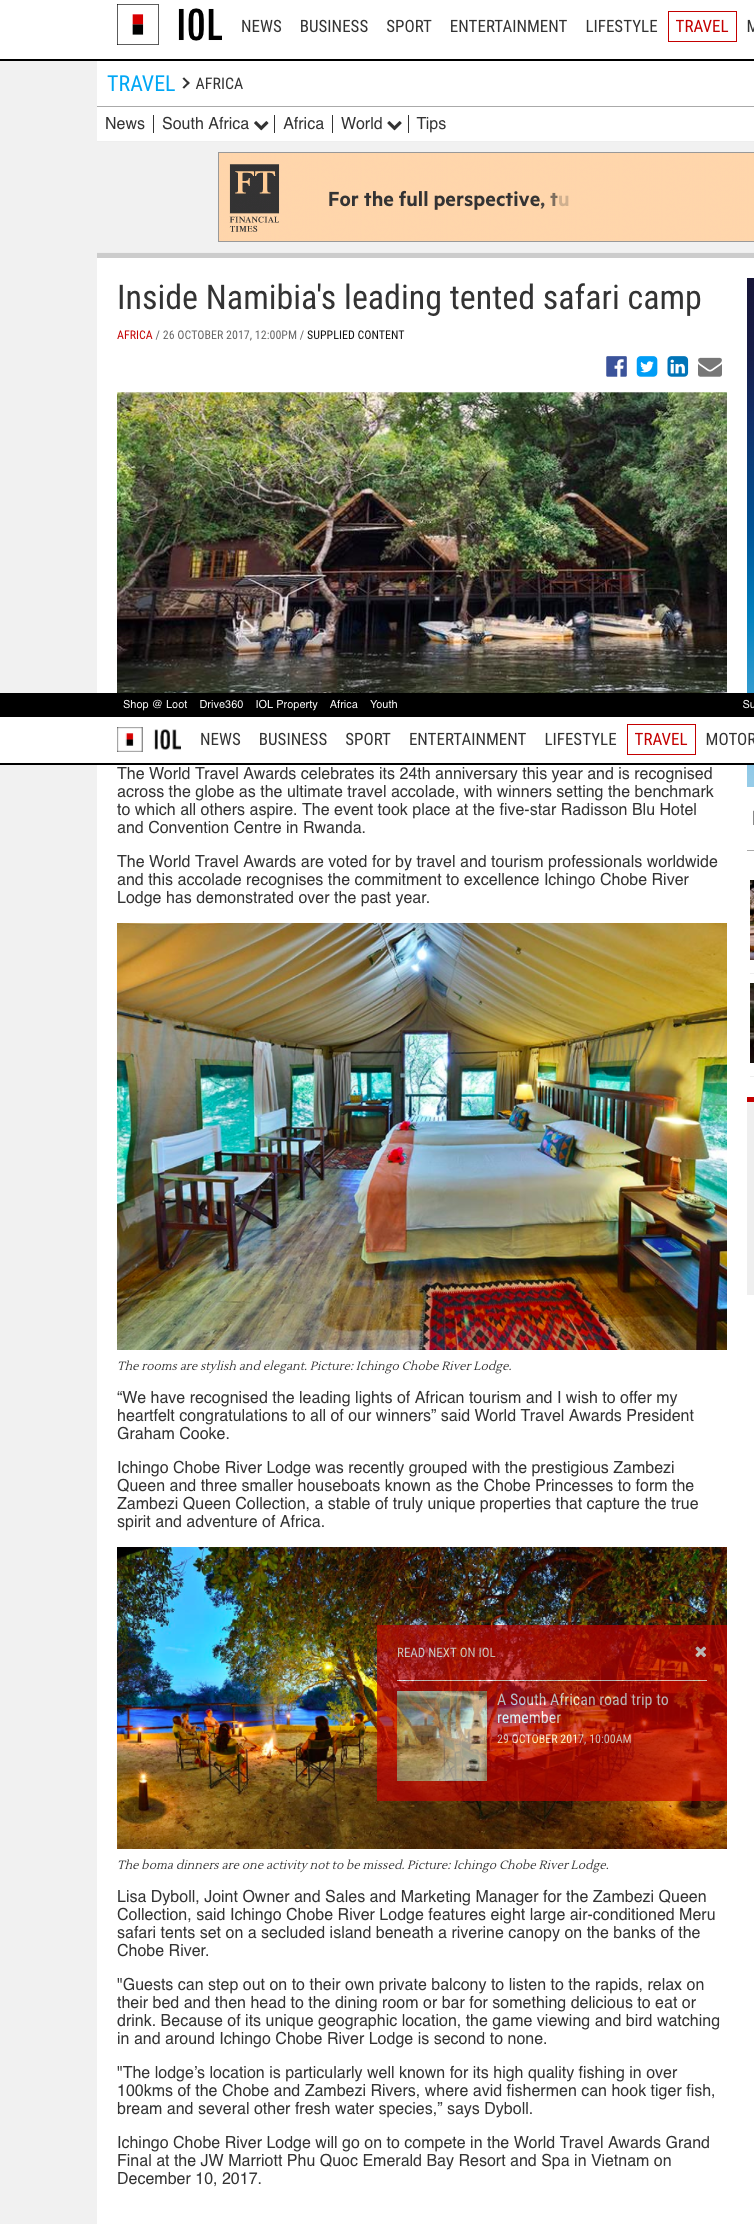 Inside Namibia leading tented safari camp